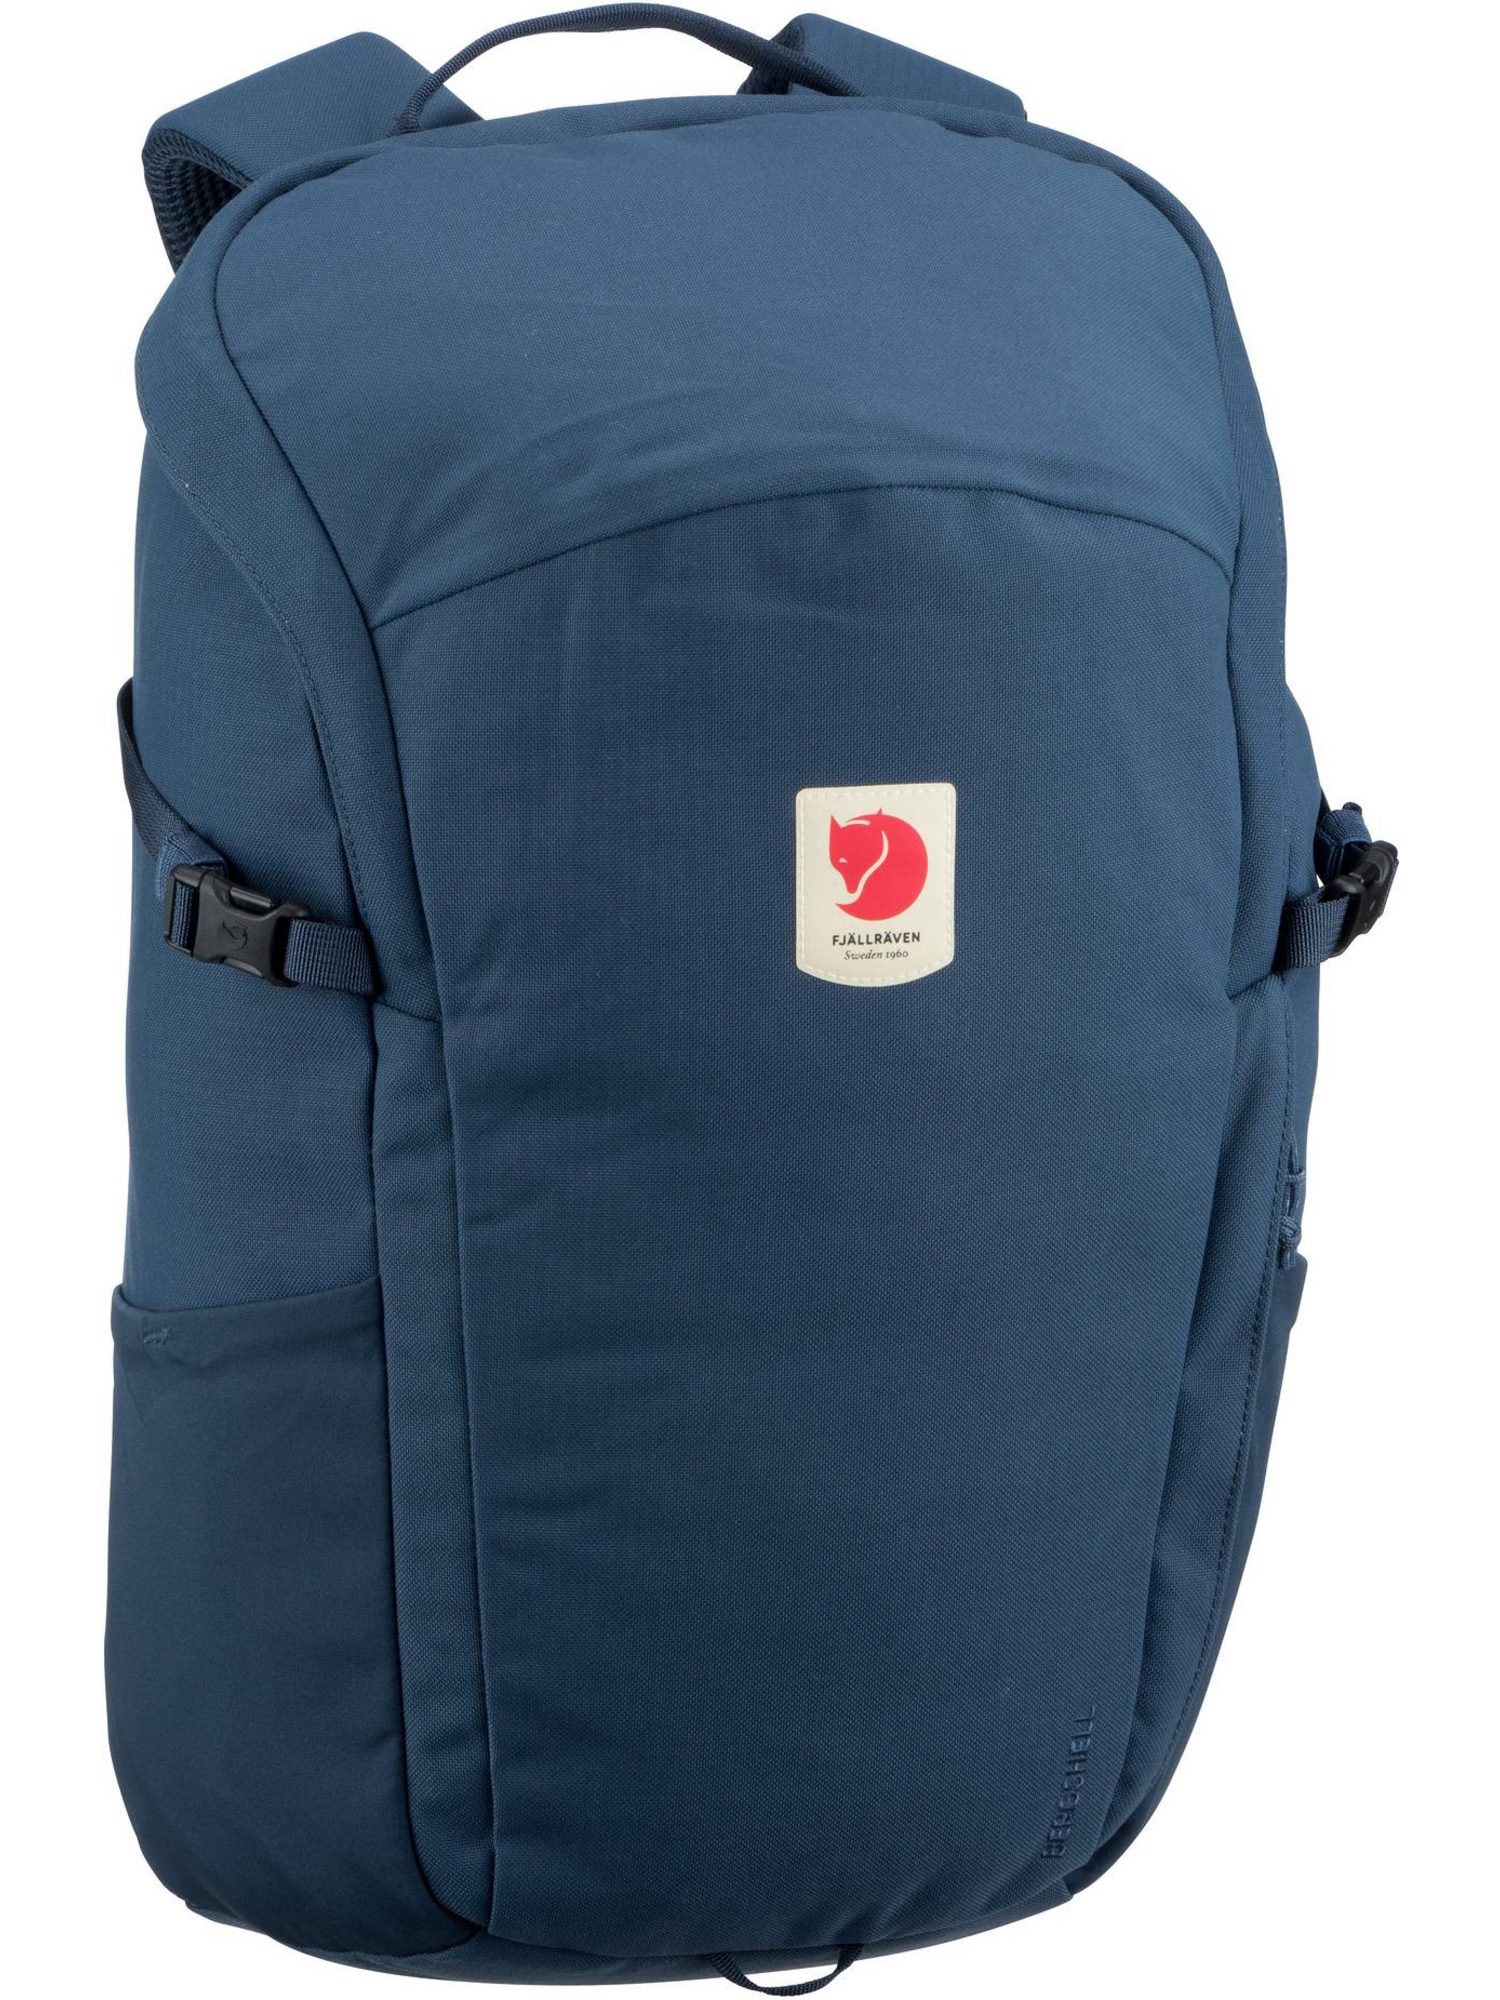 Рюкзак FJÄLLRÄVEN/Backpack Ulvö 23, цвет Mountain Blue рюкзак fjällräven backpack ulvö 30 цвет mountain blue